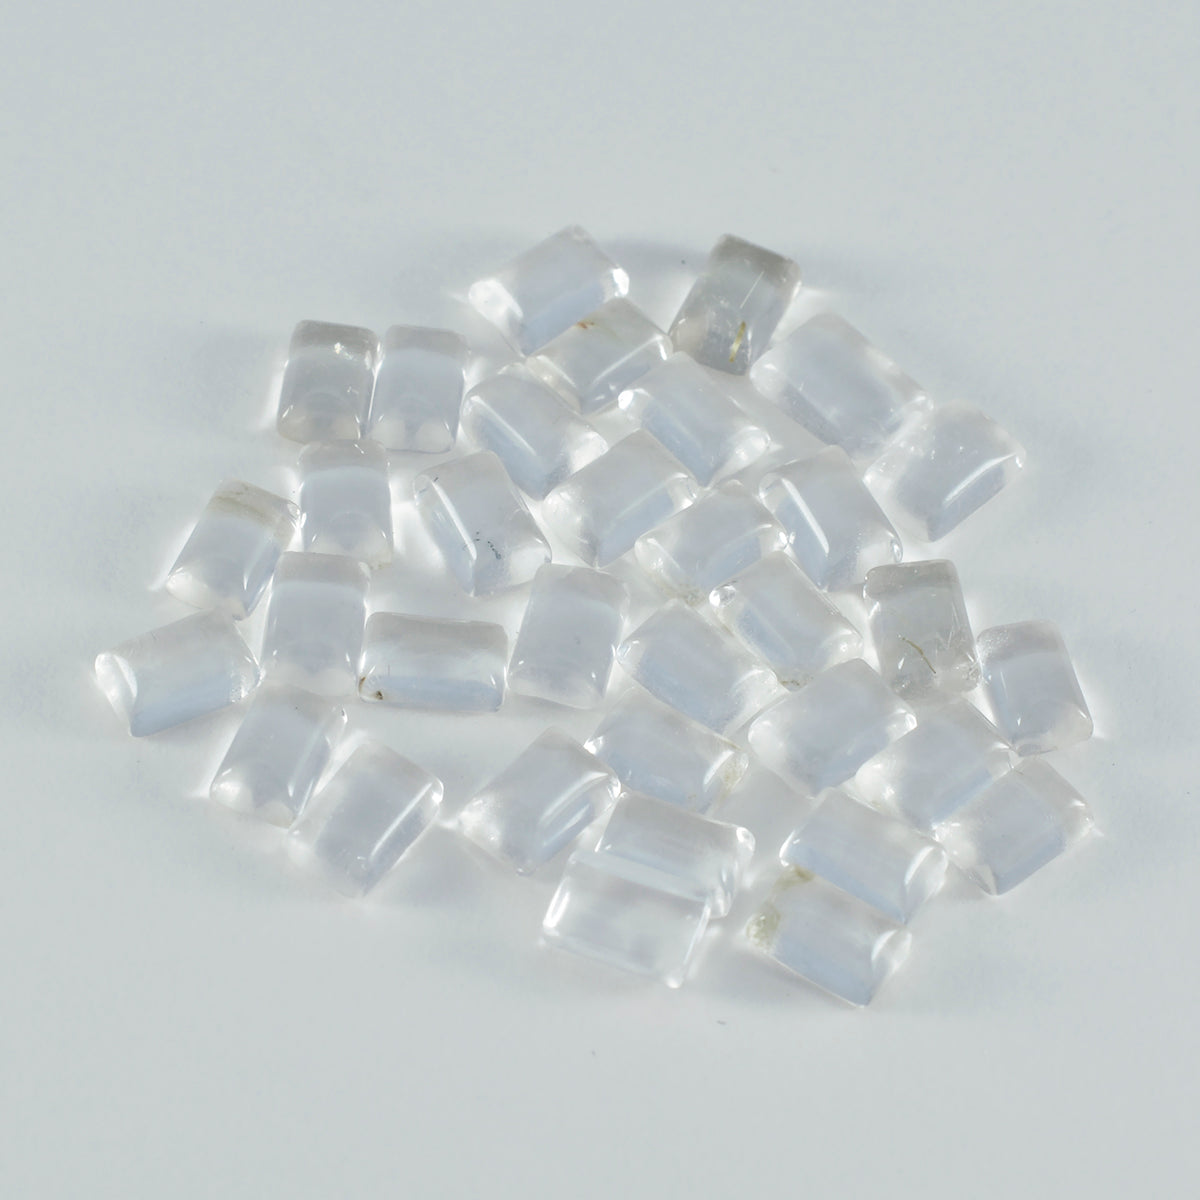 Riyogems 1 Stück weißer Kristallquarz-Cabochon, 5 x 7 mm, Achteckform, hübsche Qualitätsedelsteine